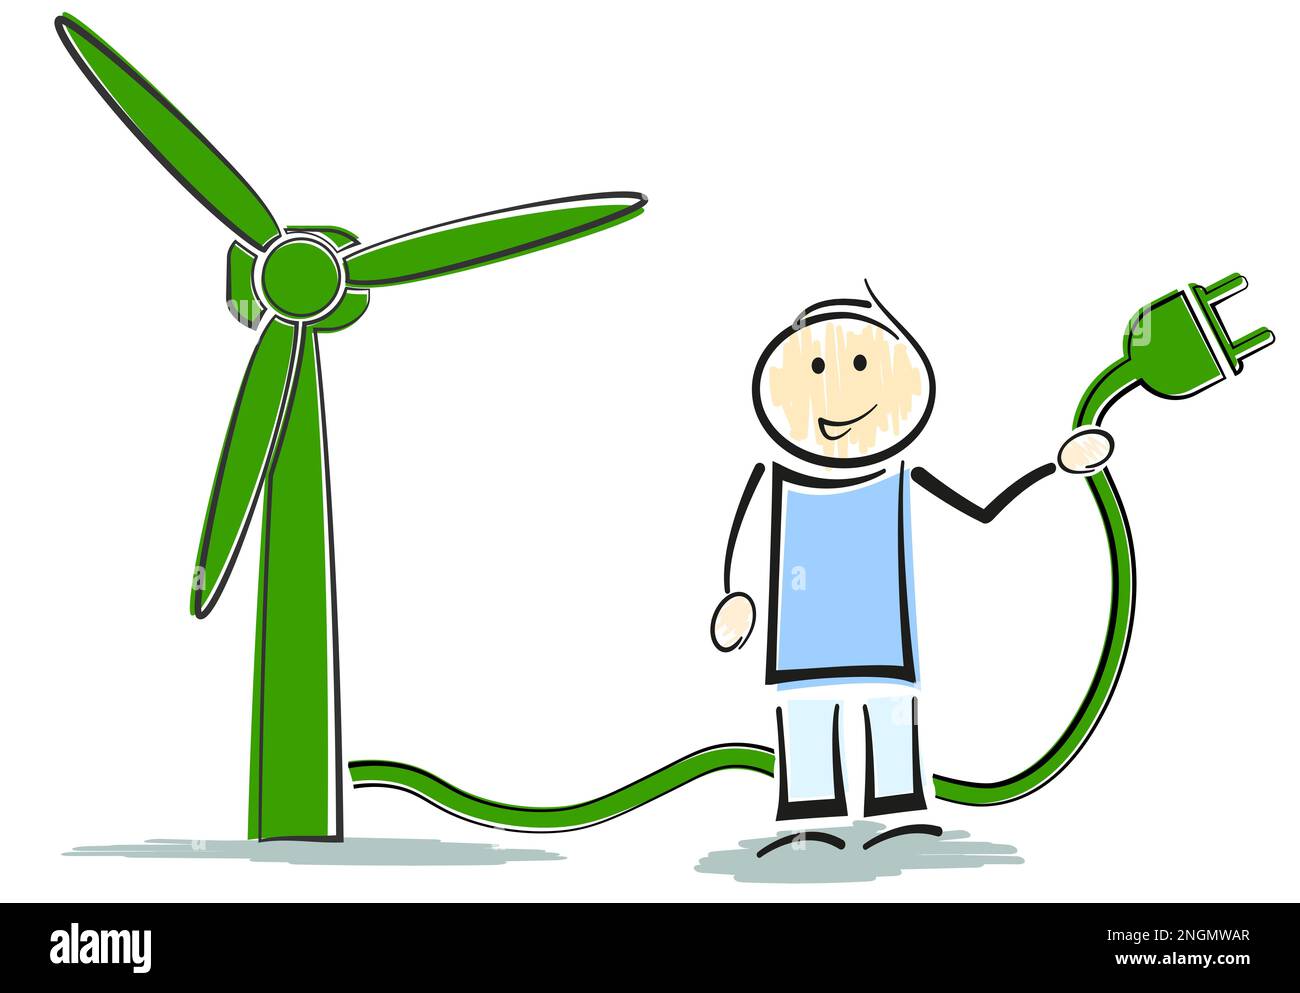 Stickman personaggio in piedi accanto a turbina eolica, verde energie rinnovabili concetto illustrazione vettoriale Foto Stock